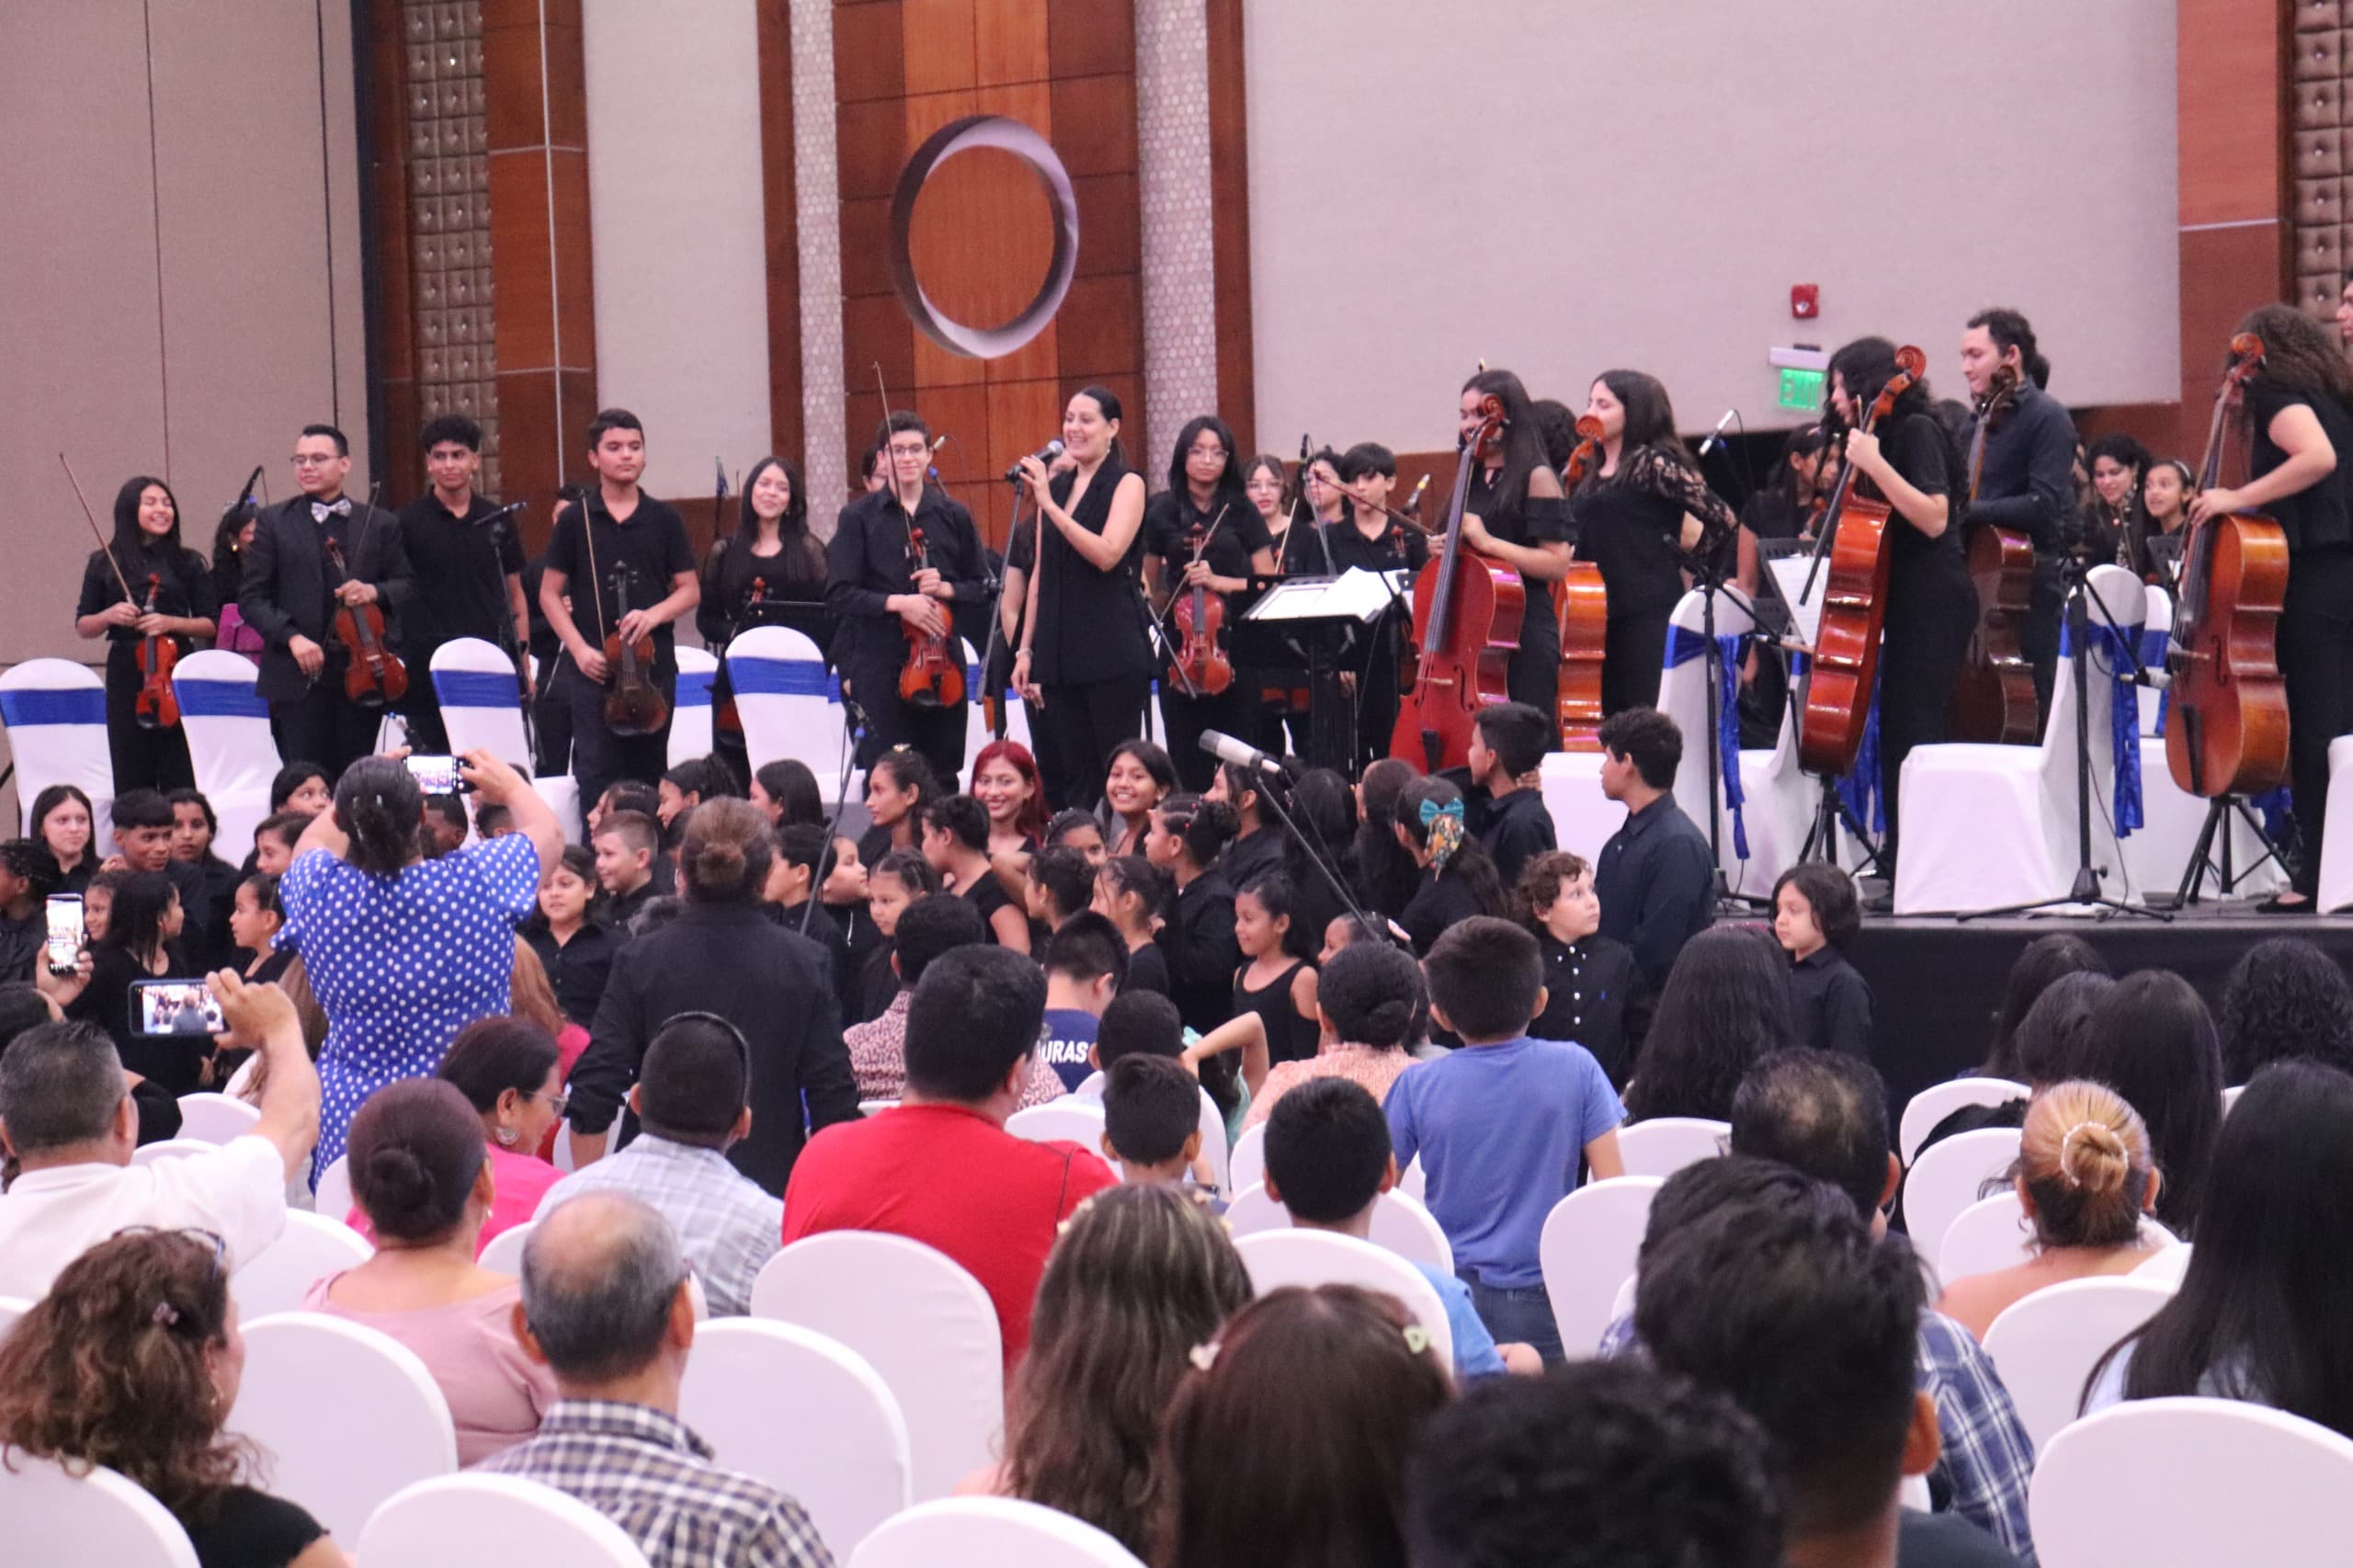 OIM organiza concierto juvenil para promover el arte y prevenir violencia contras las mujeres, niñez y juventud migrante.